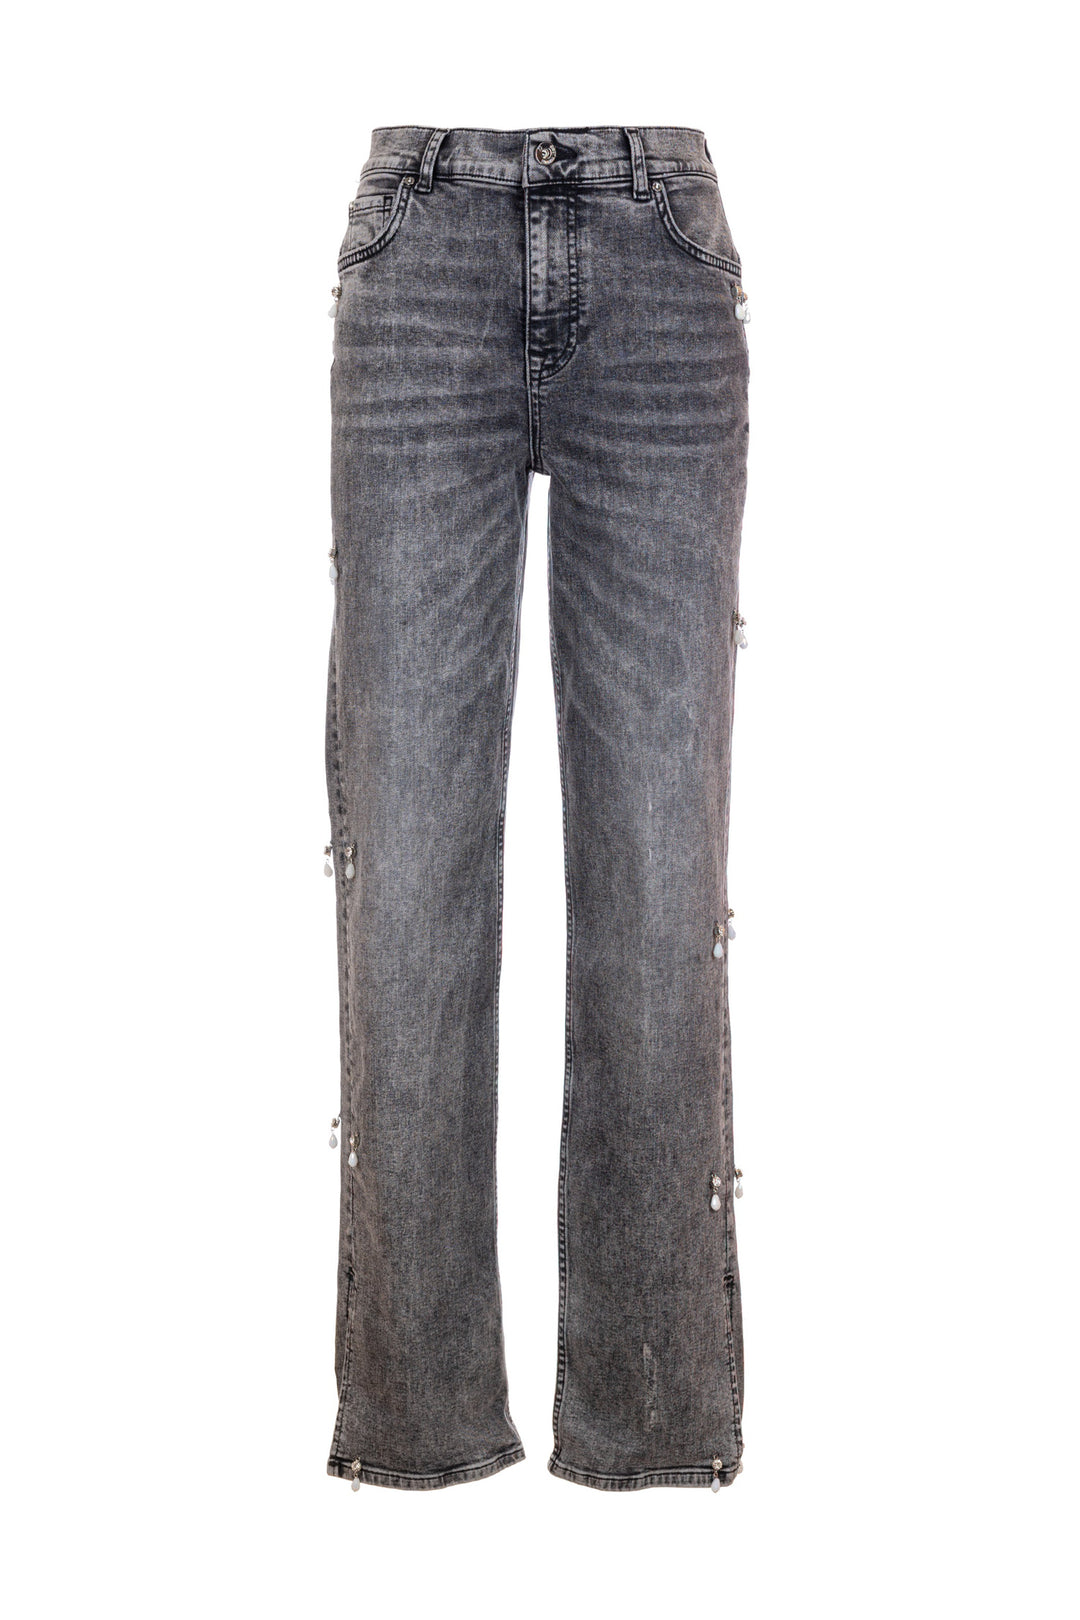 FRACOMINA Jeans regular in denim grigio con lavaggio strong - Mancinelli 1954